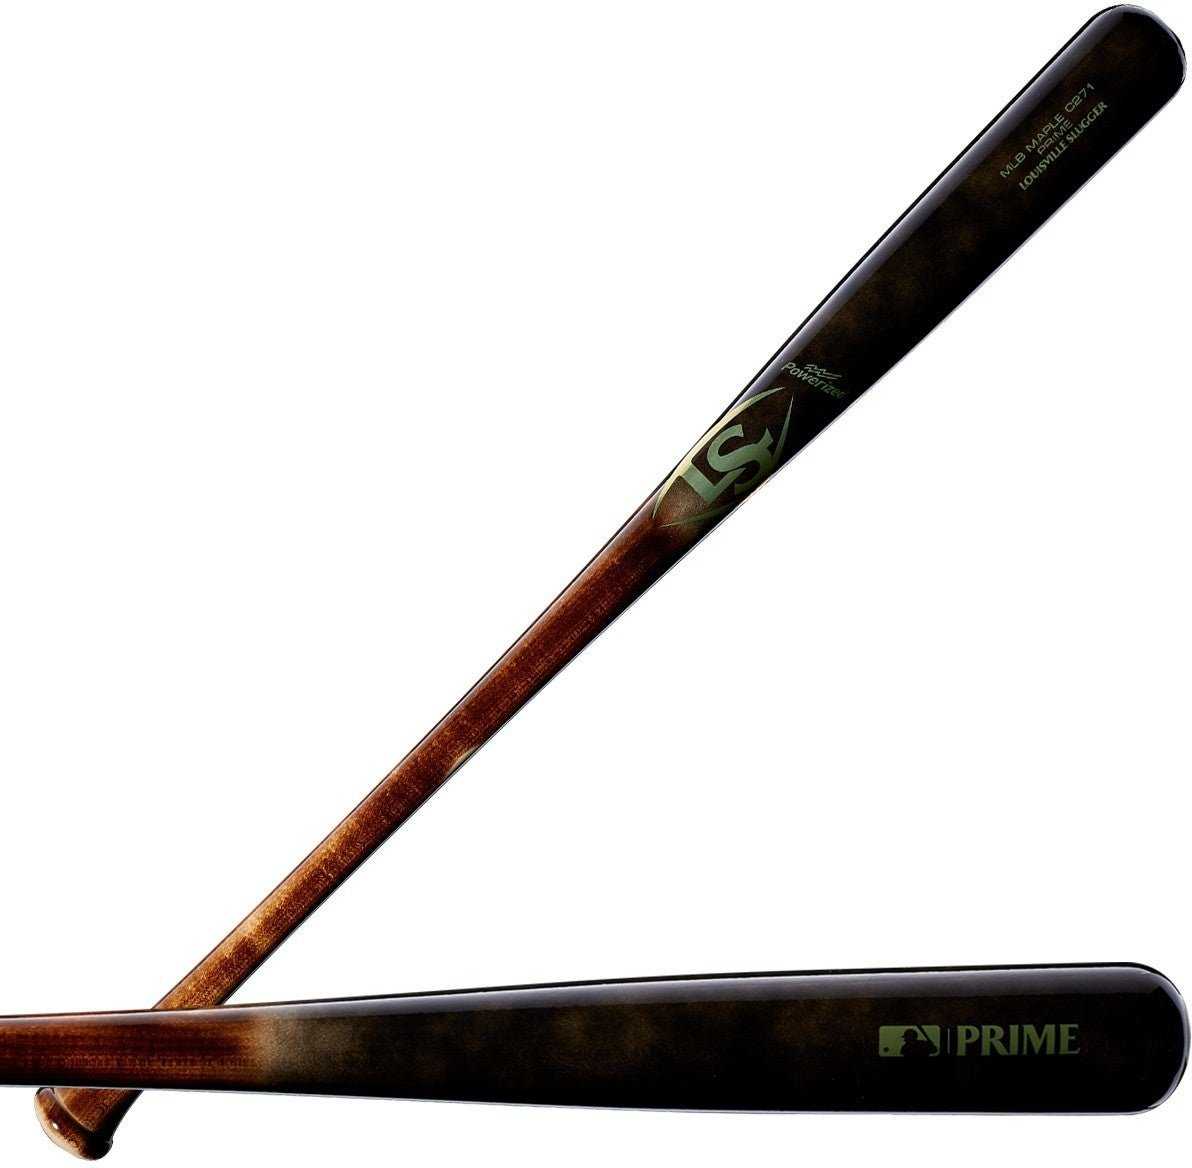 Louisville Slugger MLB Prime Maple C271 High Roller Baseball Bat - Flame Black